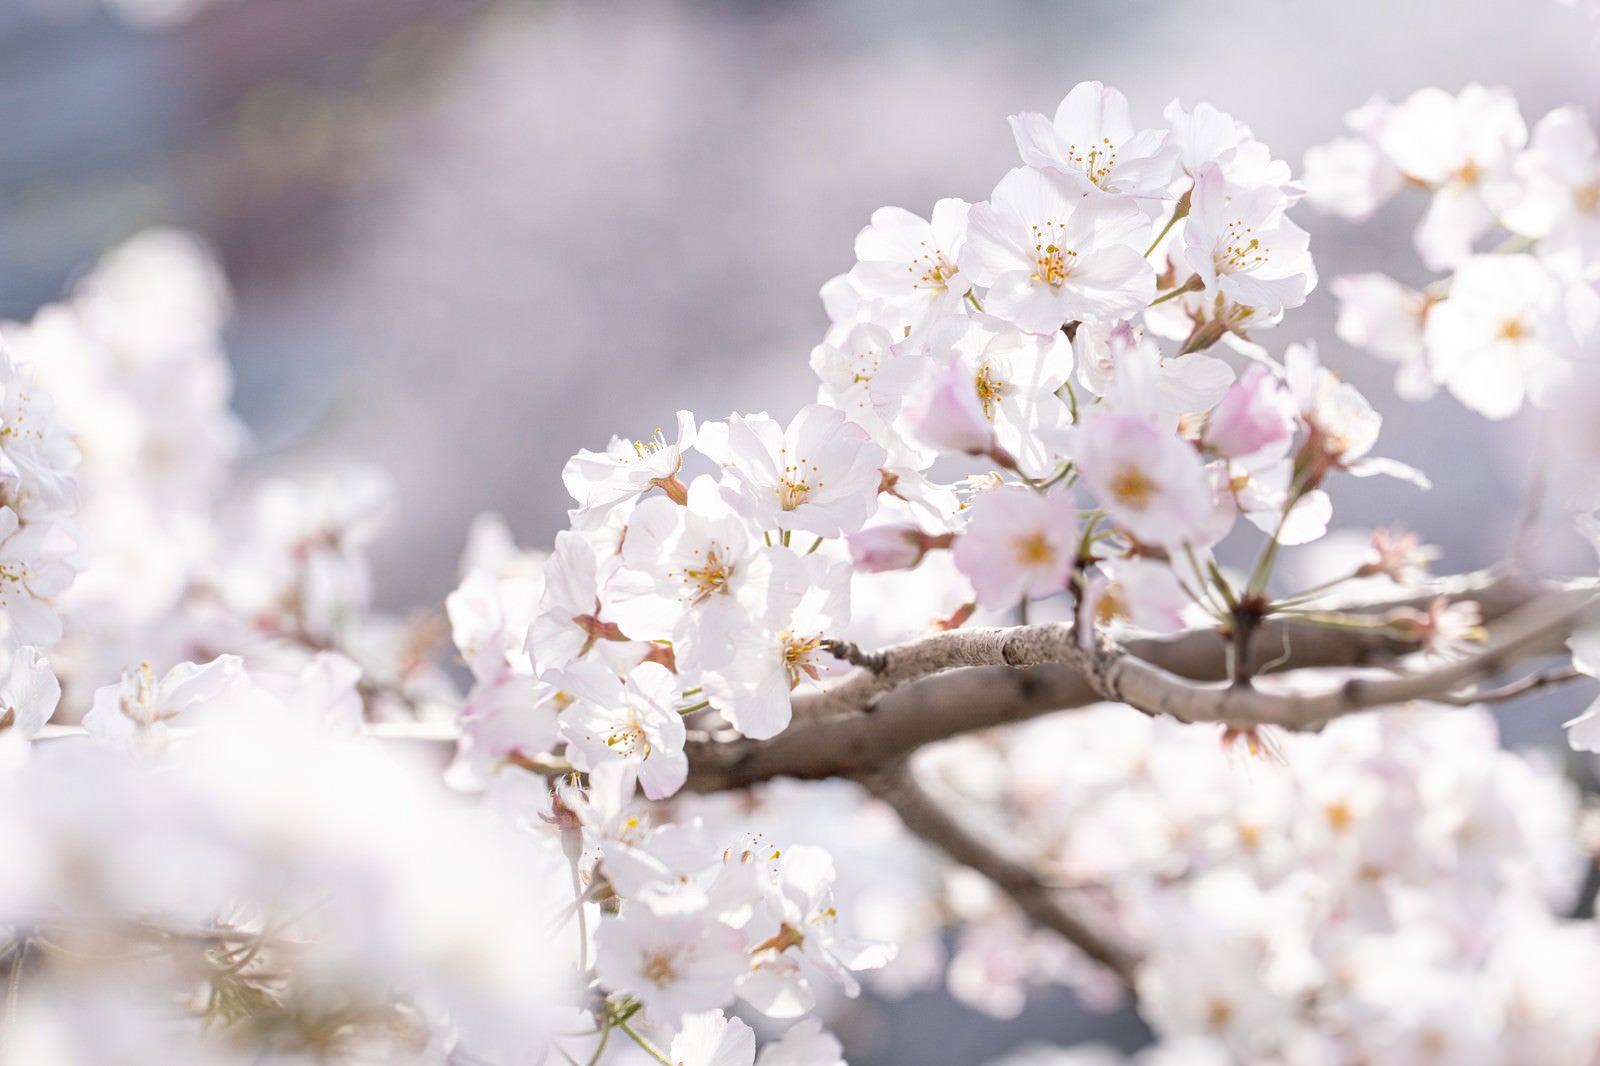 「桜の枝」の写真